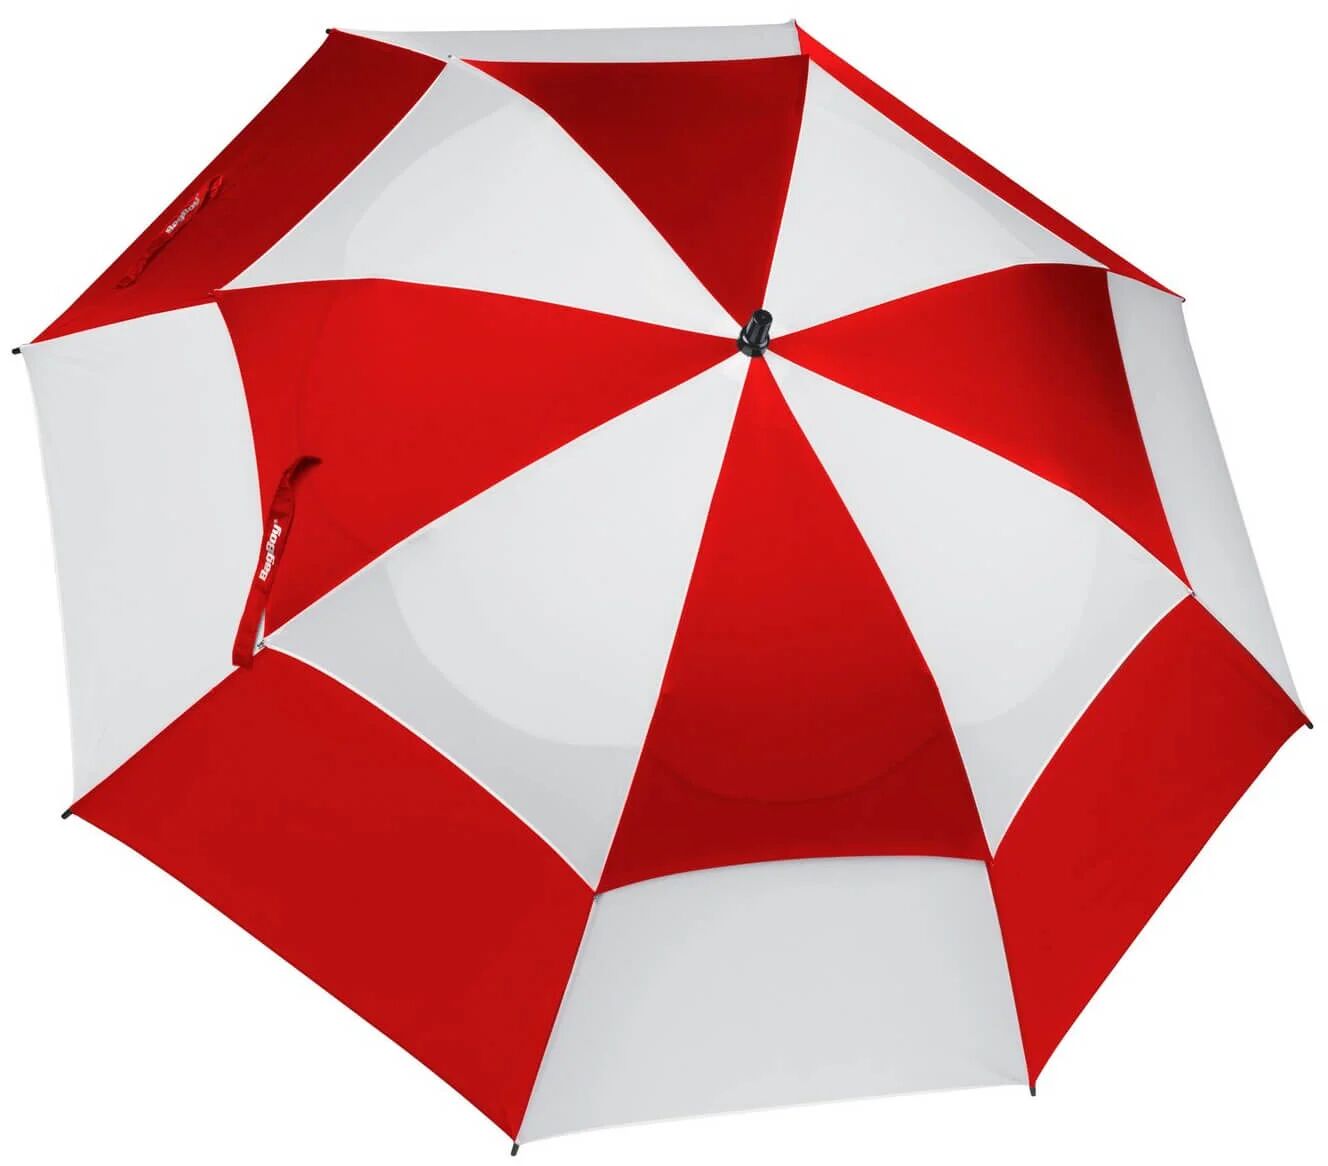 Bag Boy 62" Wind Vent Golf Umbrella